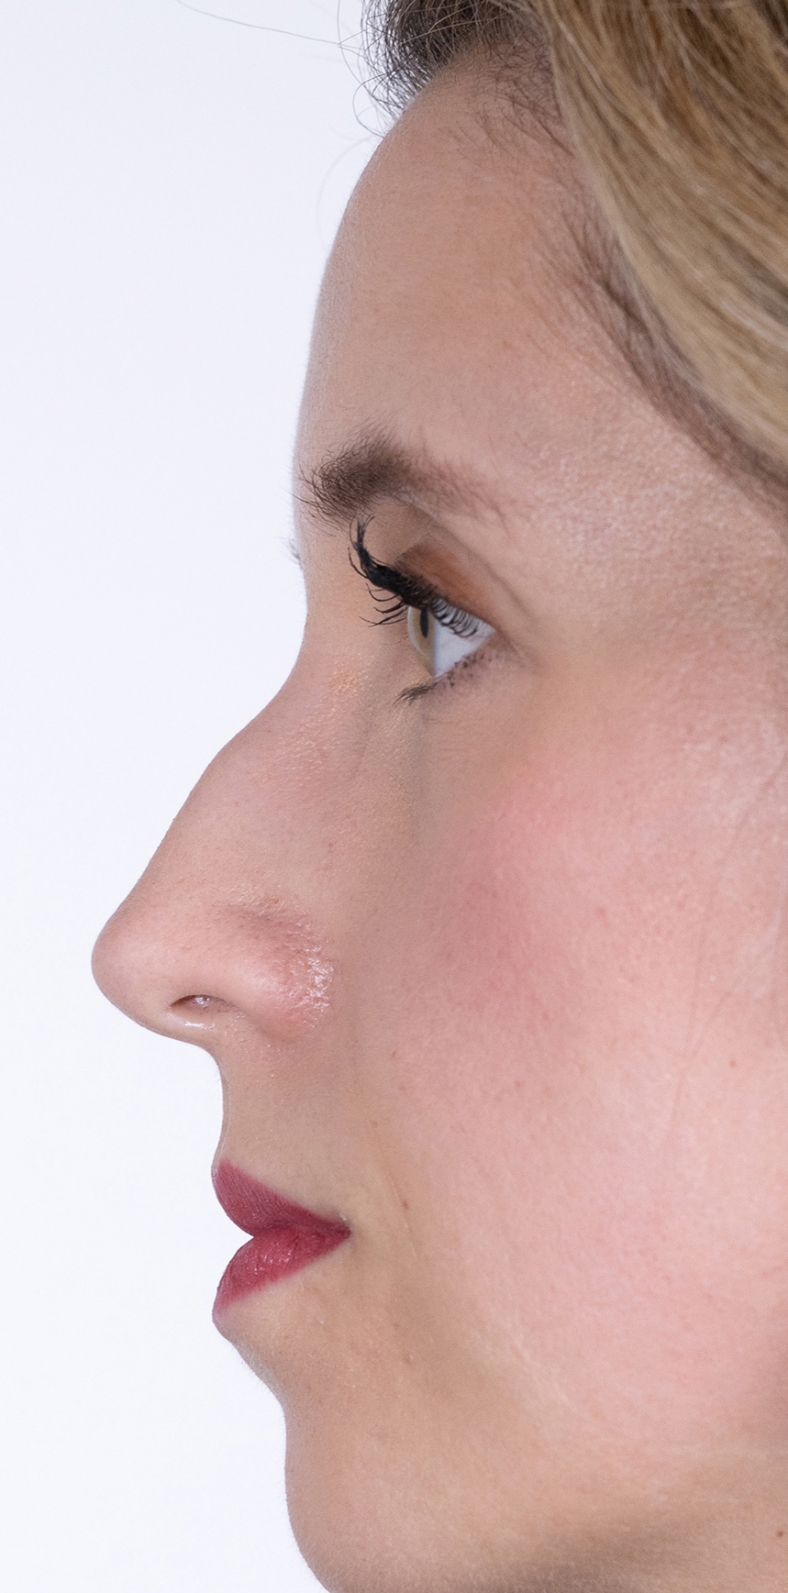 Nekirurška korekcija nosa - prije, sl. 3 2022